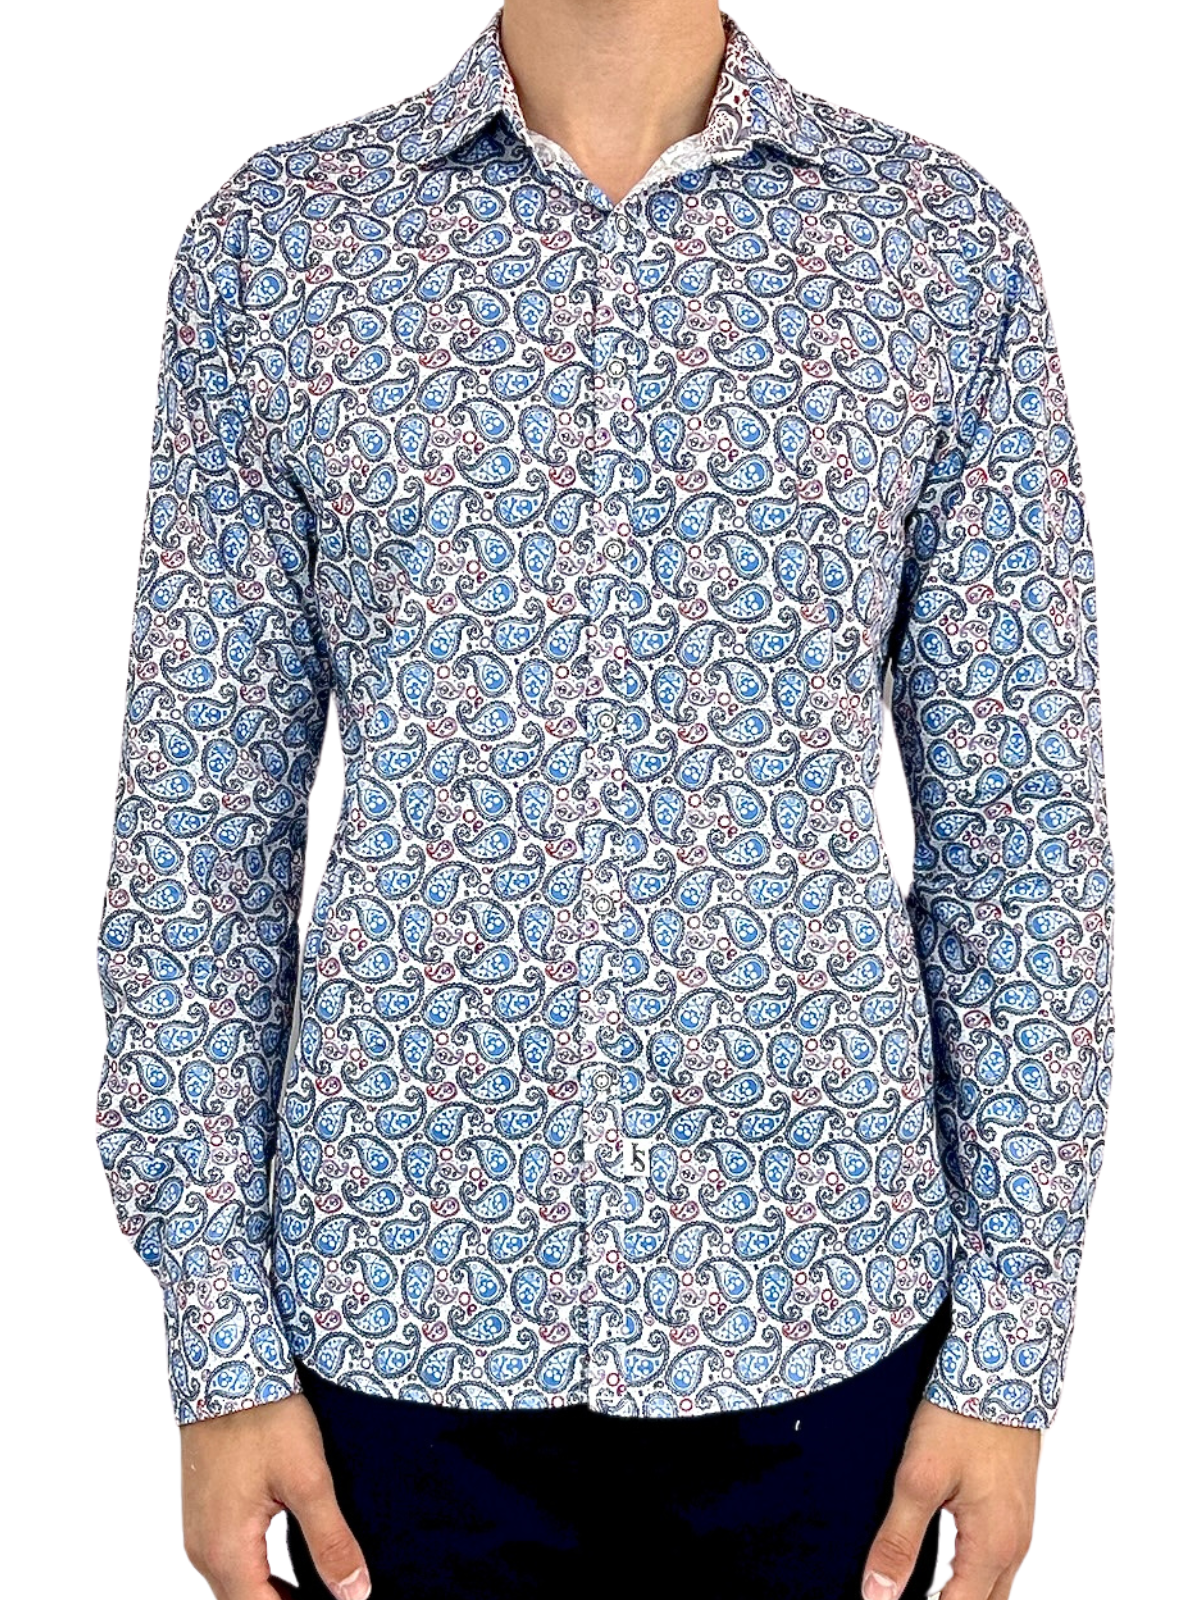 Pirate Paisley Cotton L/S Shirt - Blue